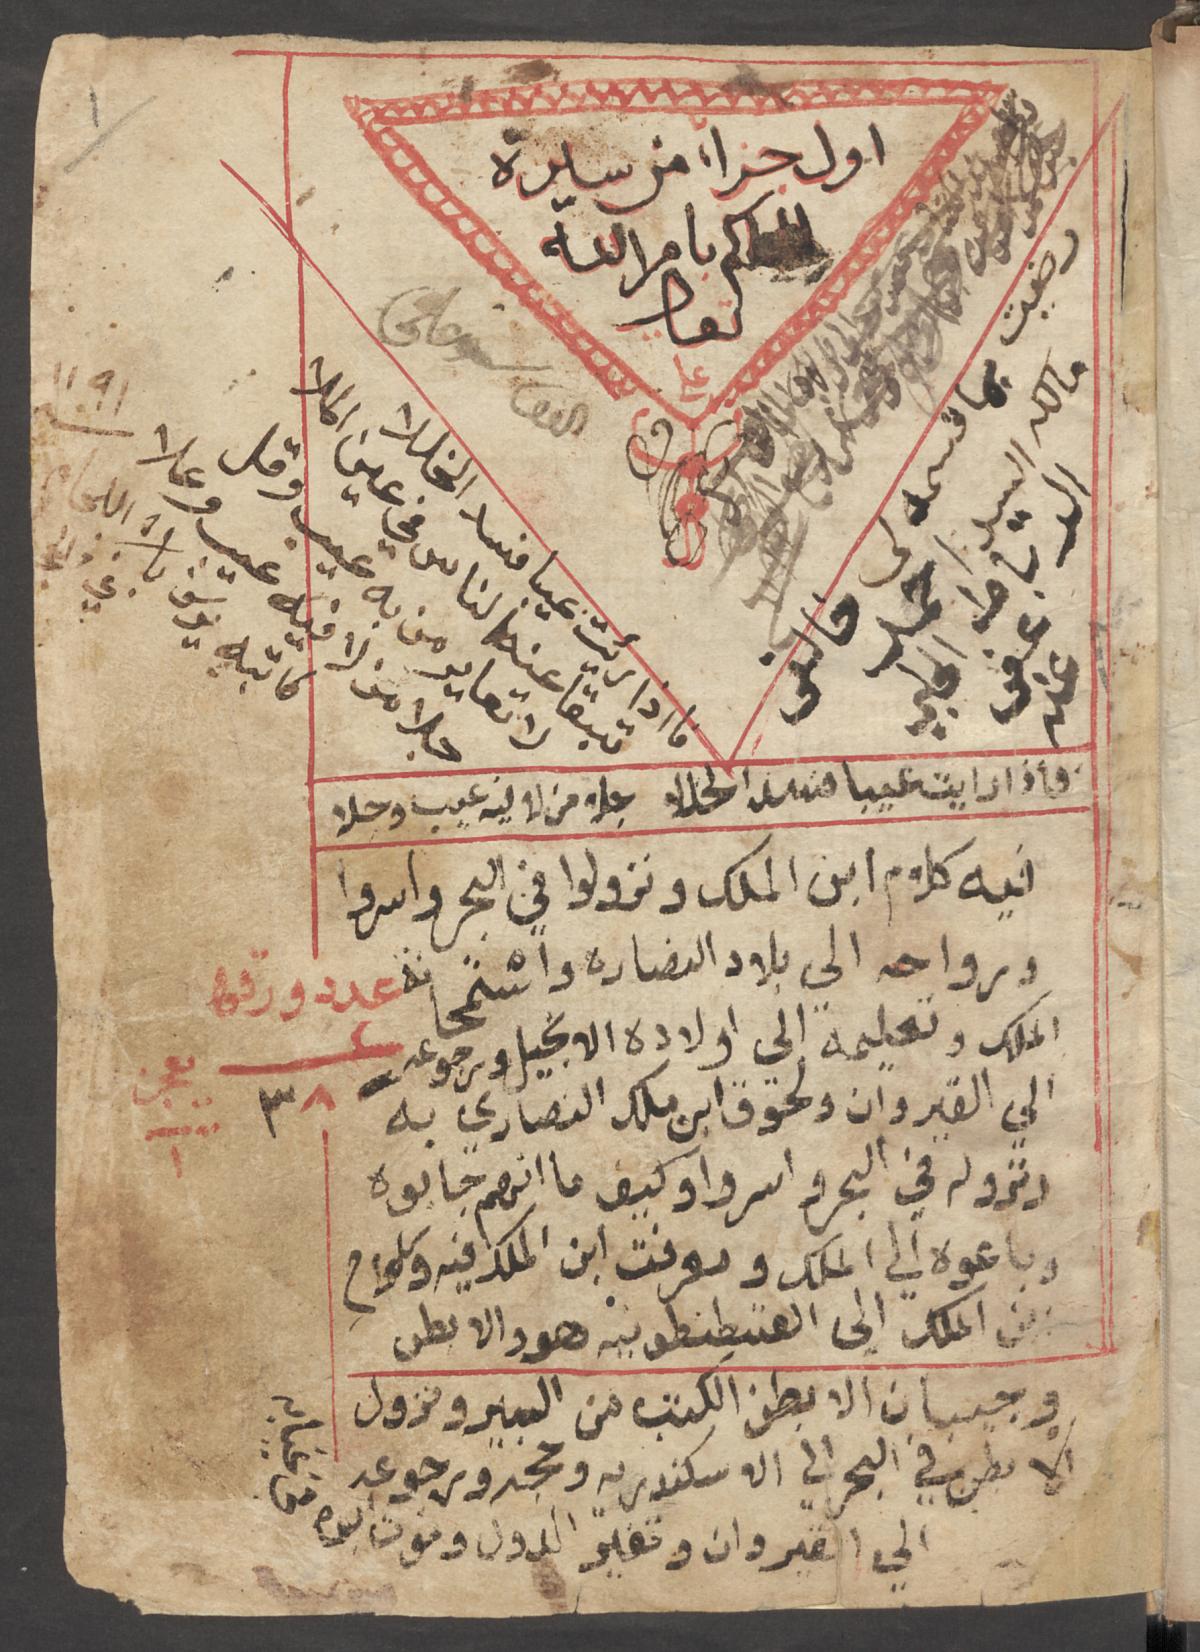 First part of the "Sīrat al-Ḥakīm" (Wetzstein II 486).